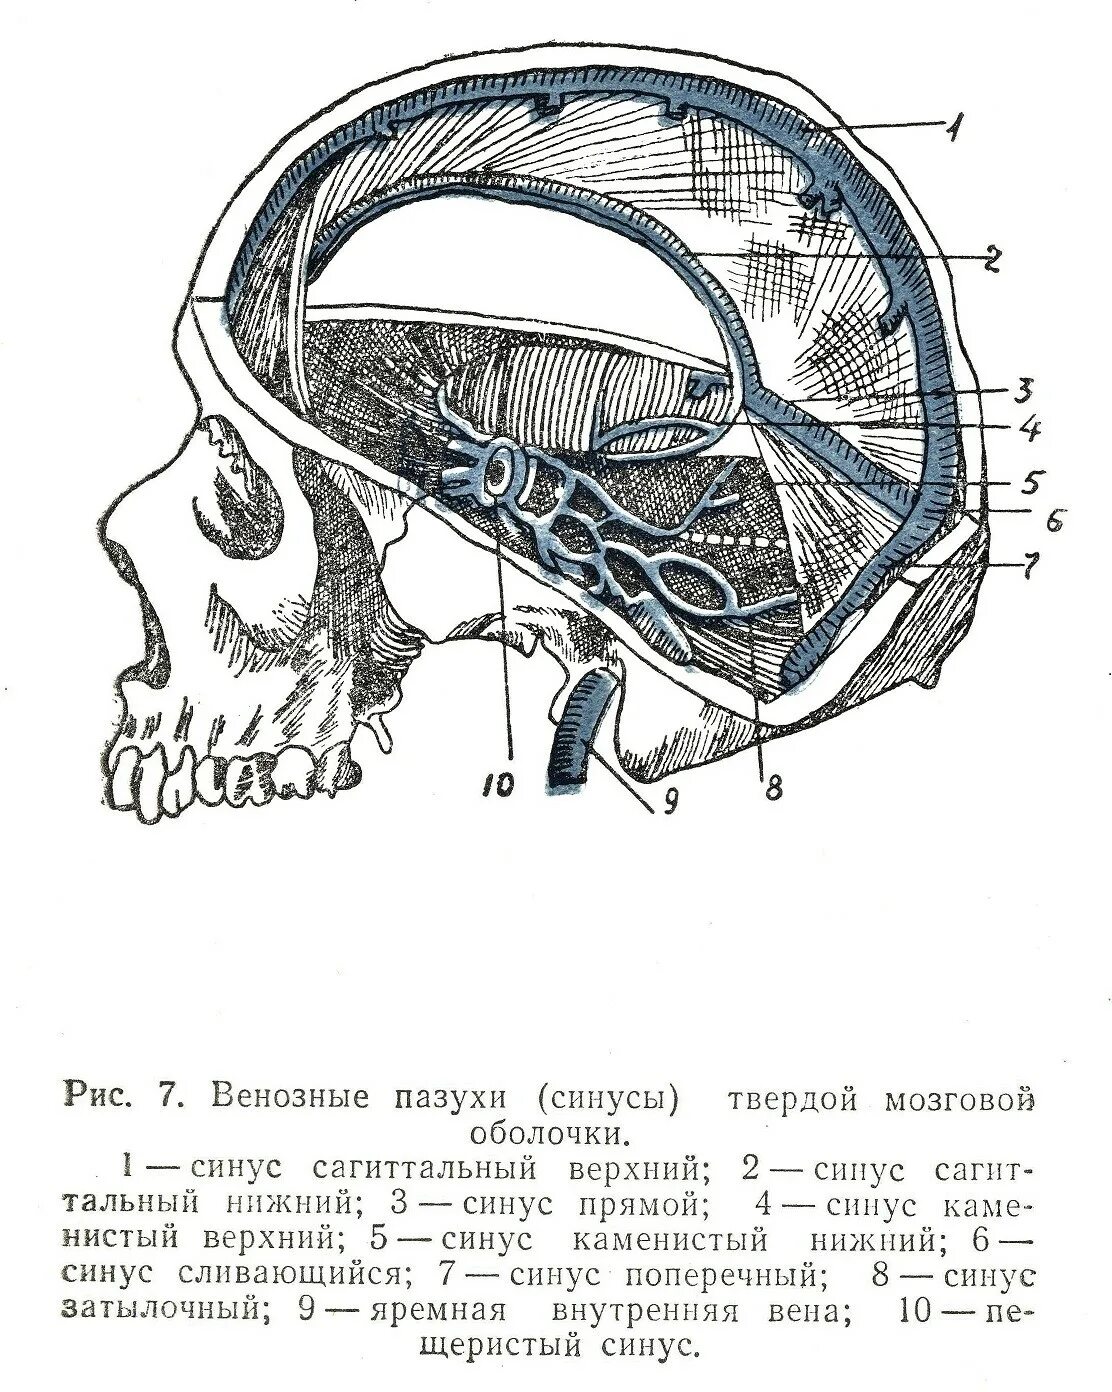 Синусы твердой оболочки мозга. Синусы твёрдой мозговой оболочки анатомия. Синусы твердой мозговой оболочки на черепе. Синусы твердой мозговой оболочки схема. Сигмовидный синус твердой мозговой оболочки.